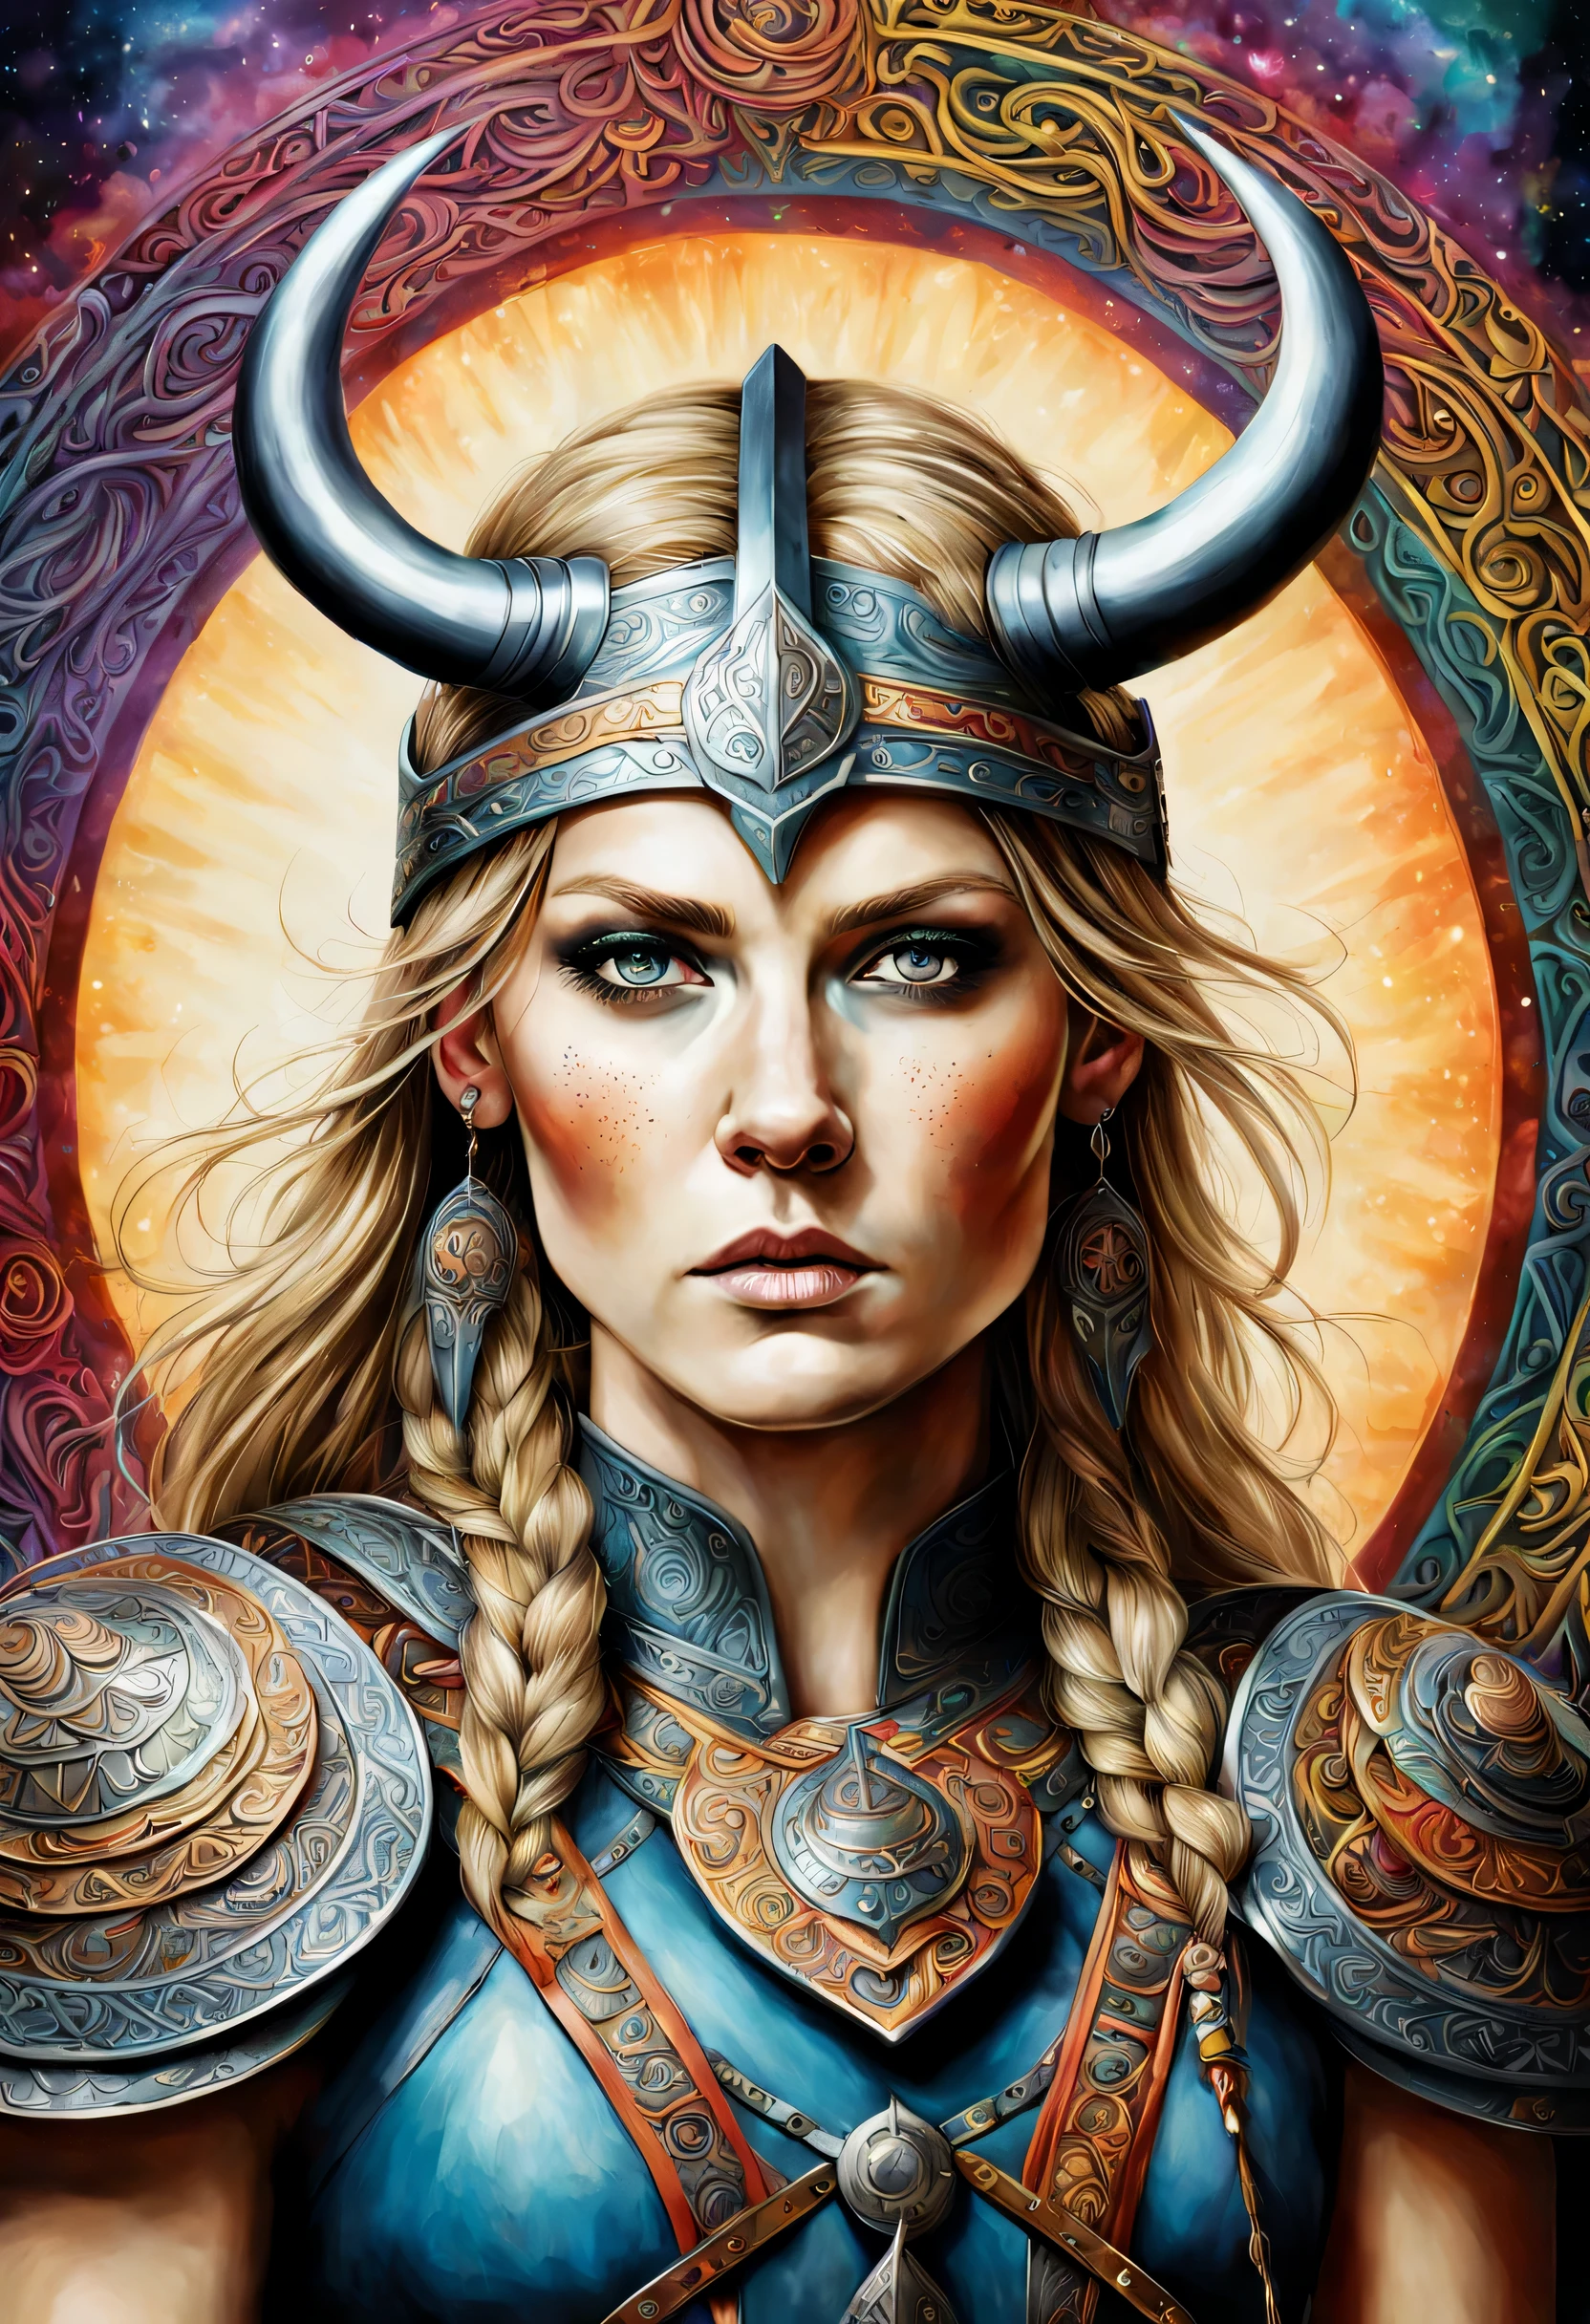 в психоделическом припыленном и разноцветном стиле великолепный и детальный реалистичный портрет женщины-воина-викинга